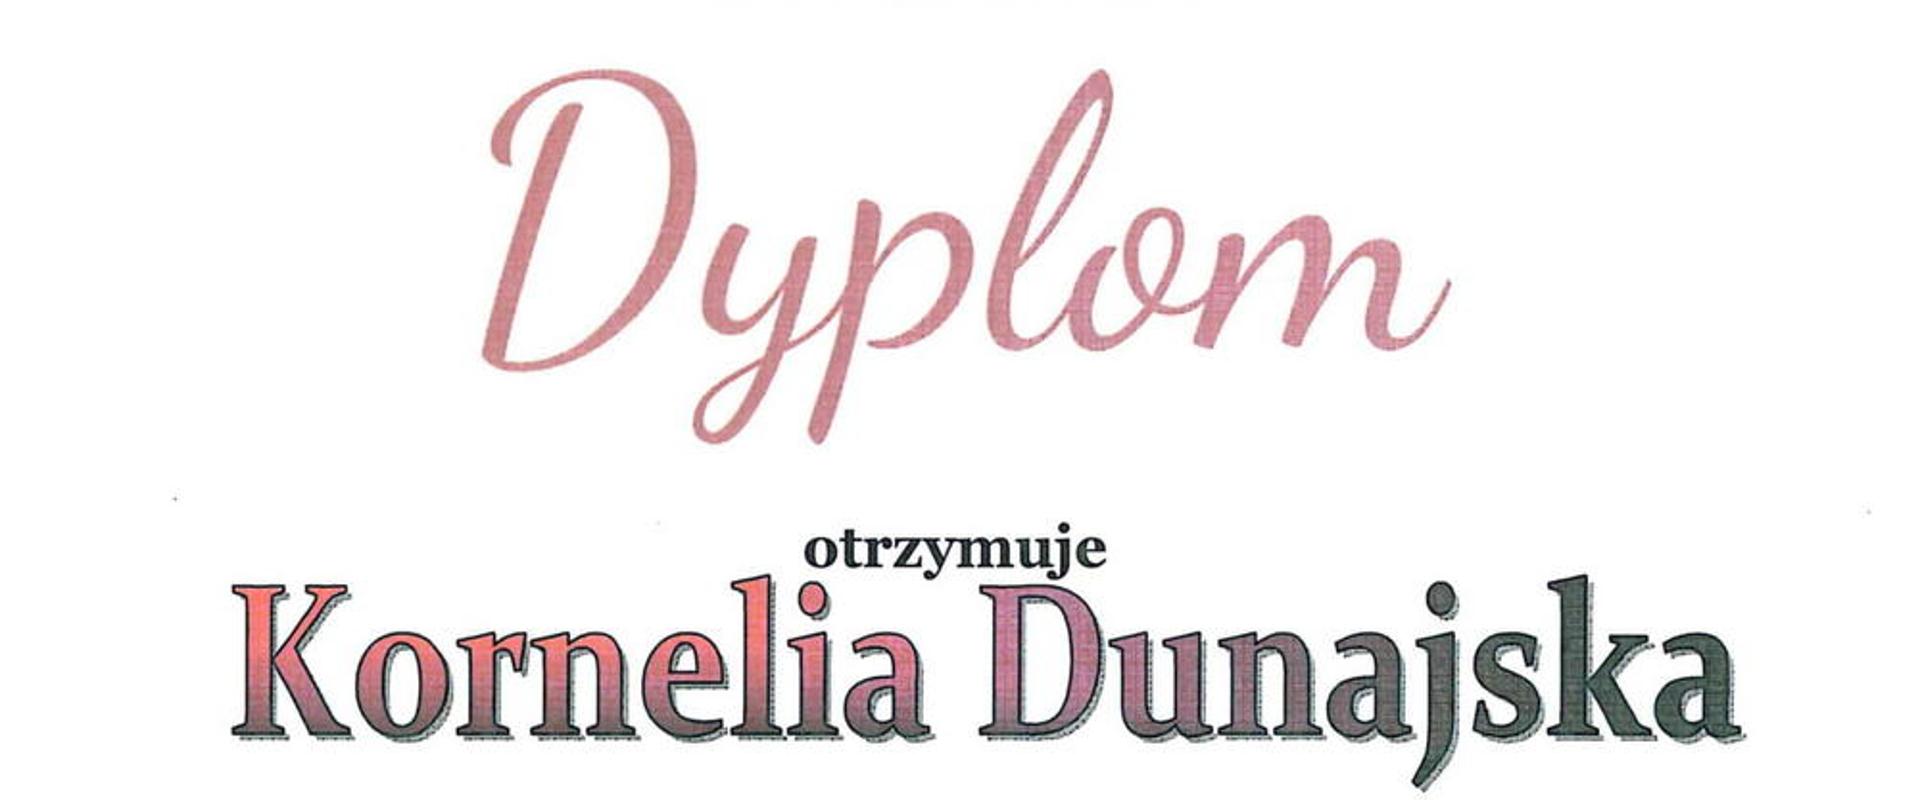 Zdjęcie dyplomu, który otrzymała Kornelia Dunajska fot. Alina Dombrowska